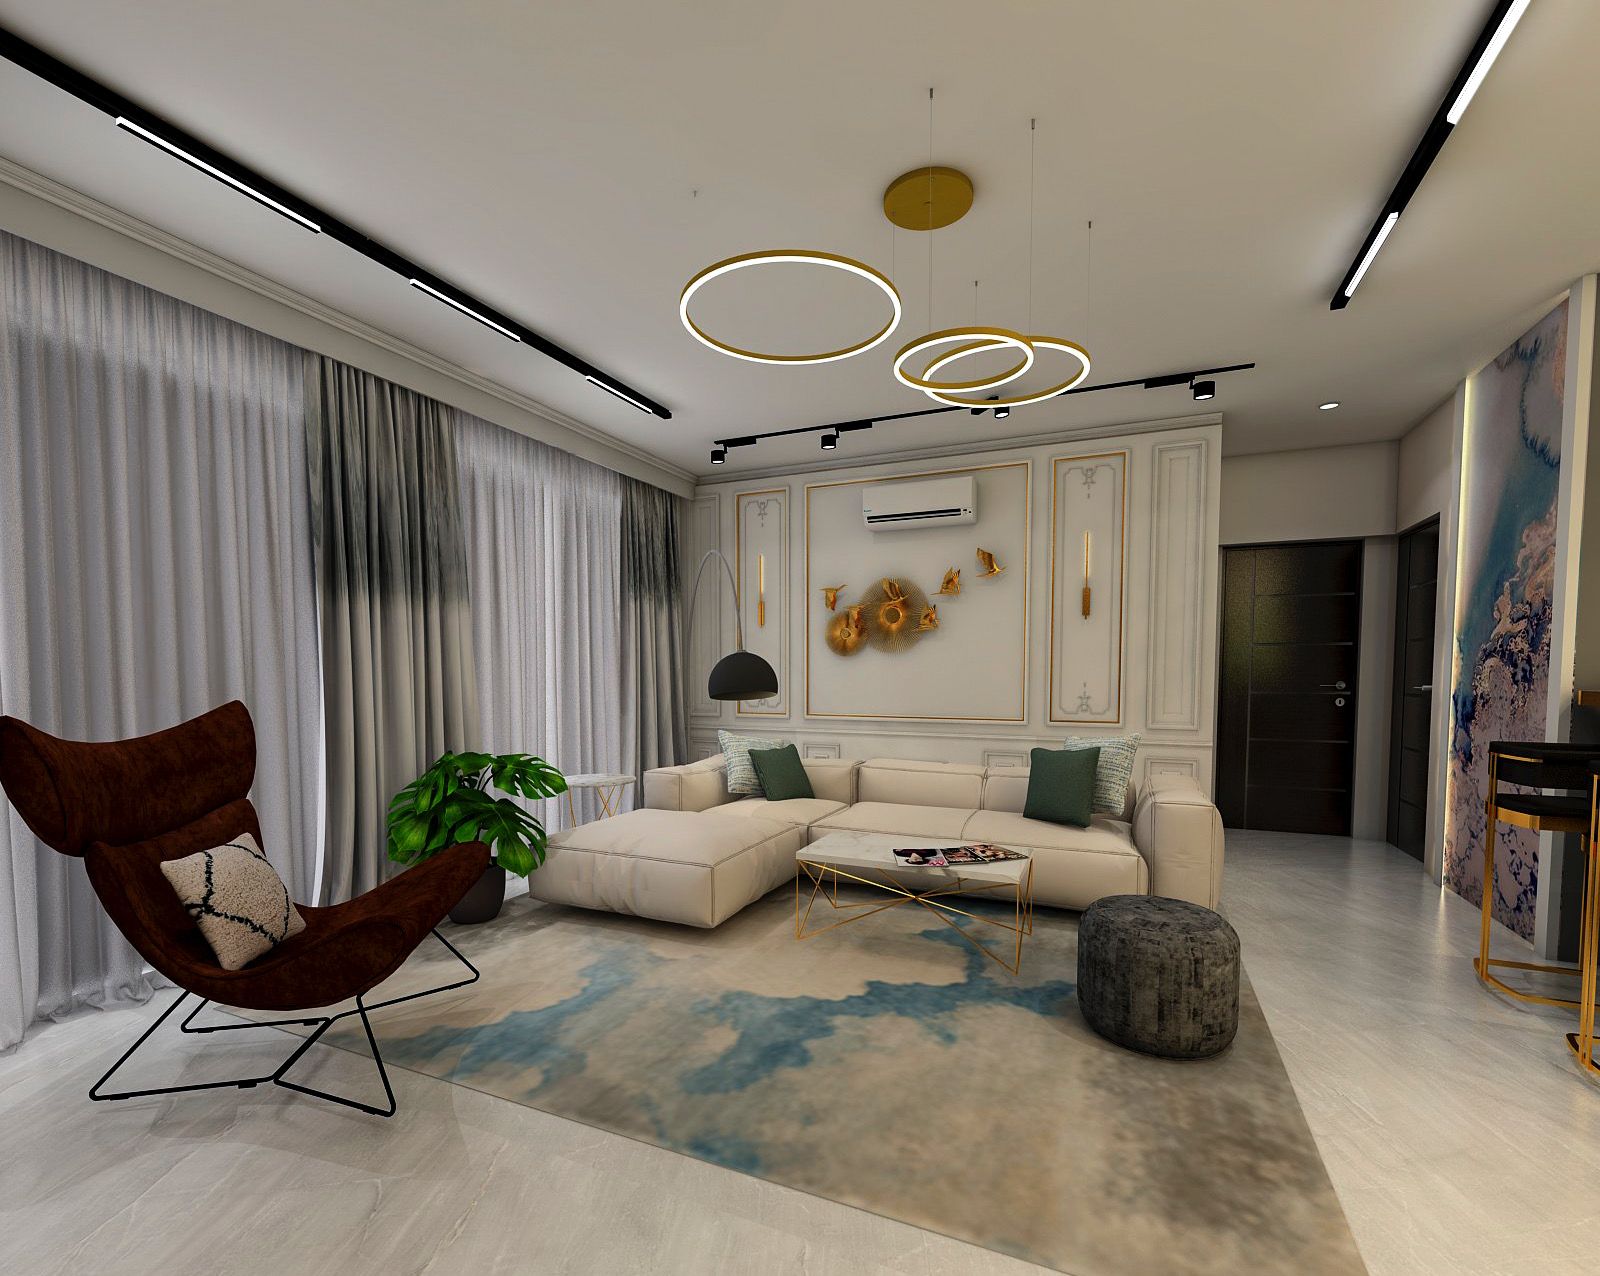 Spacious Living Room Design